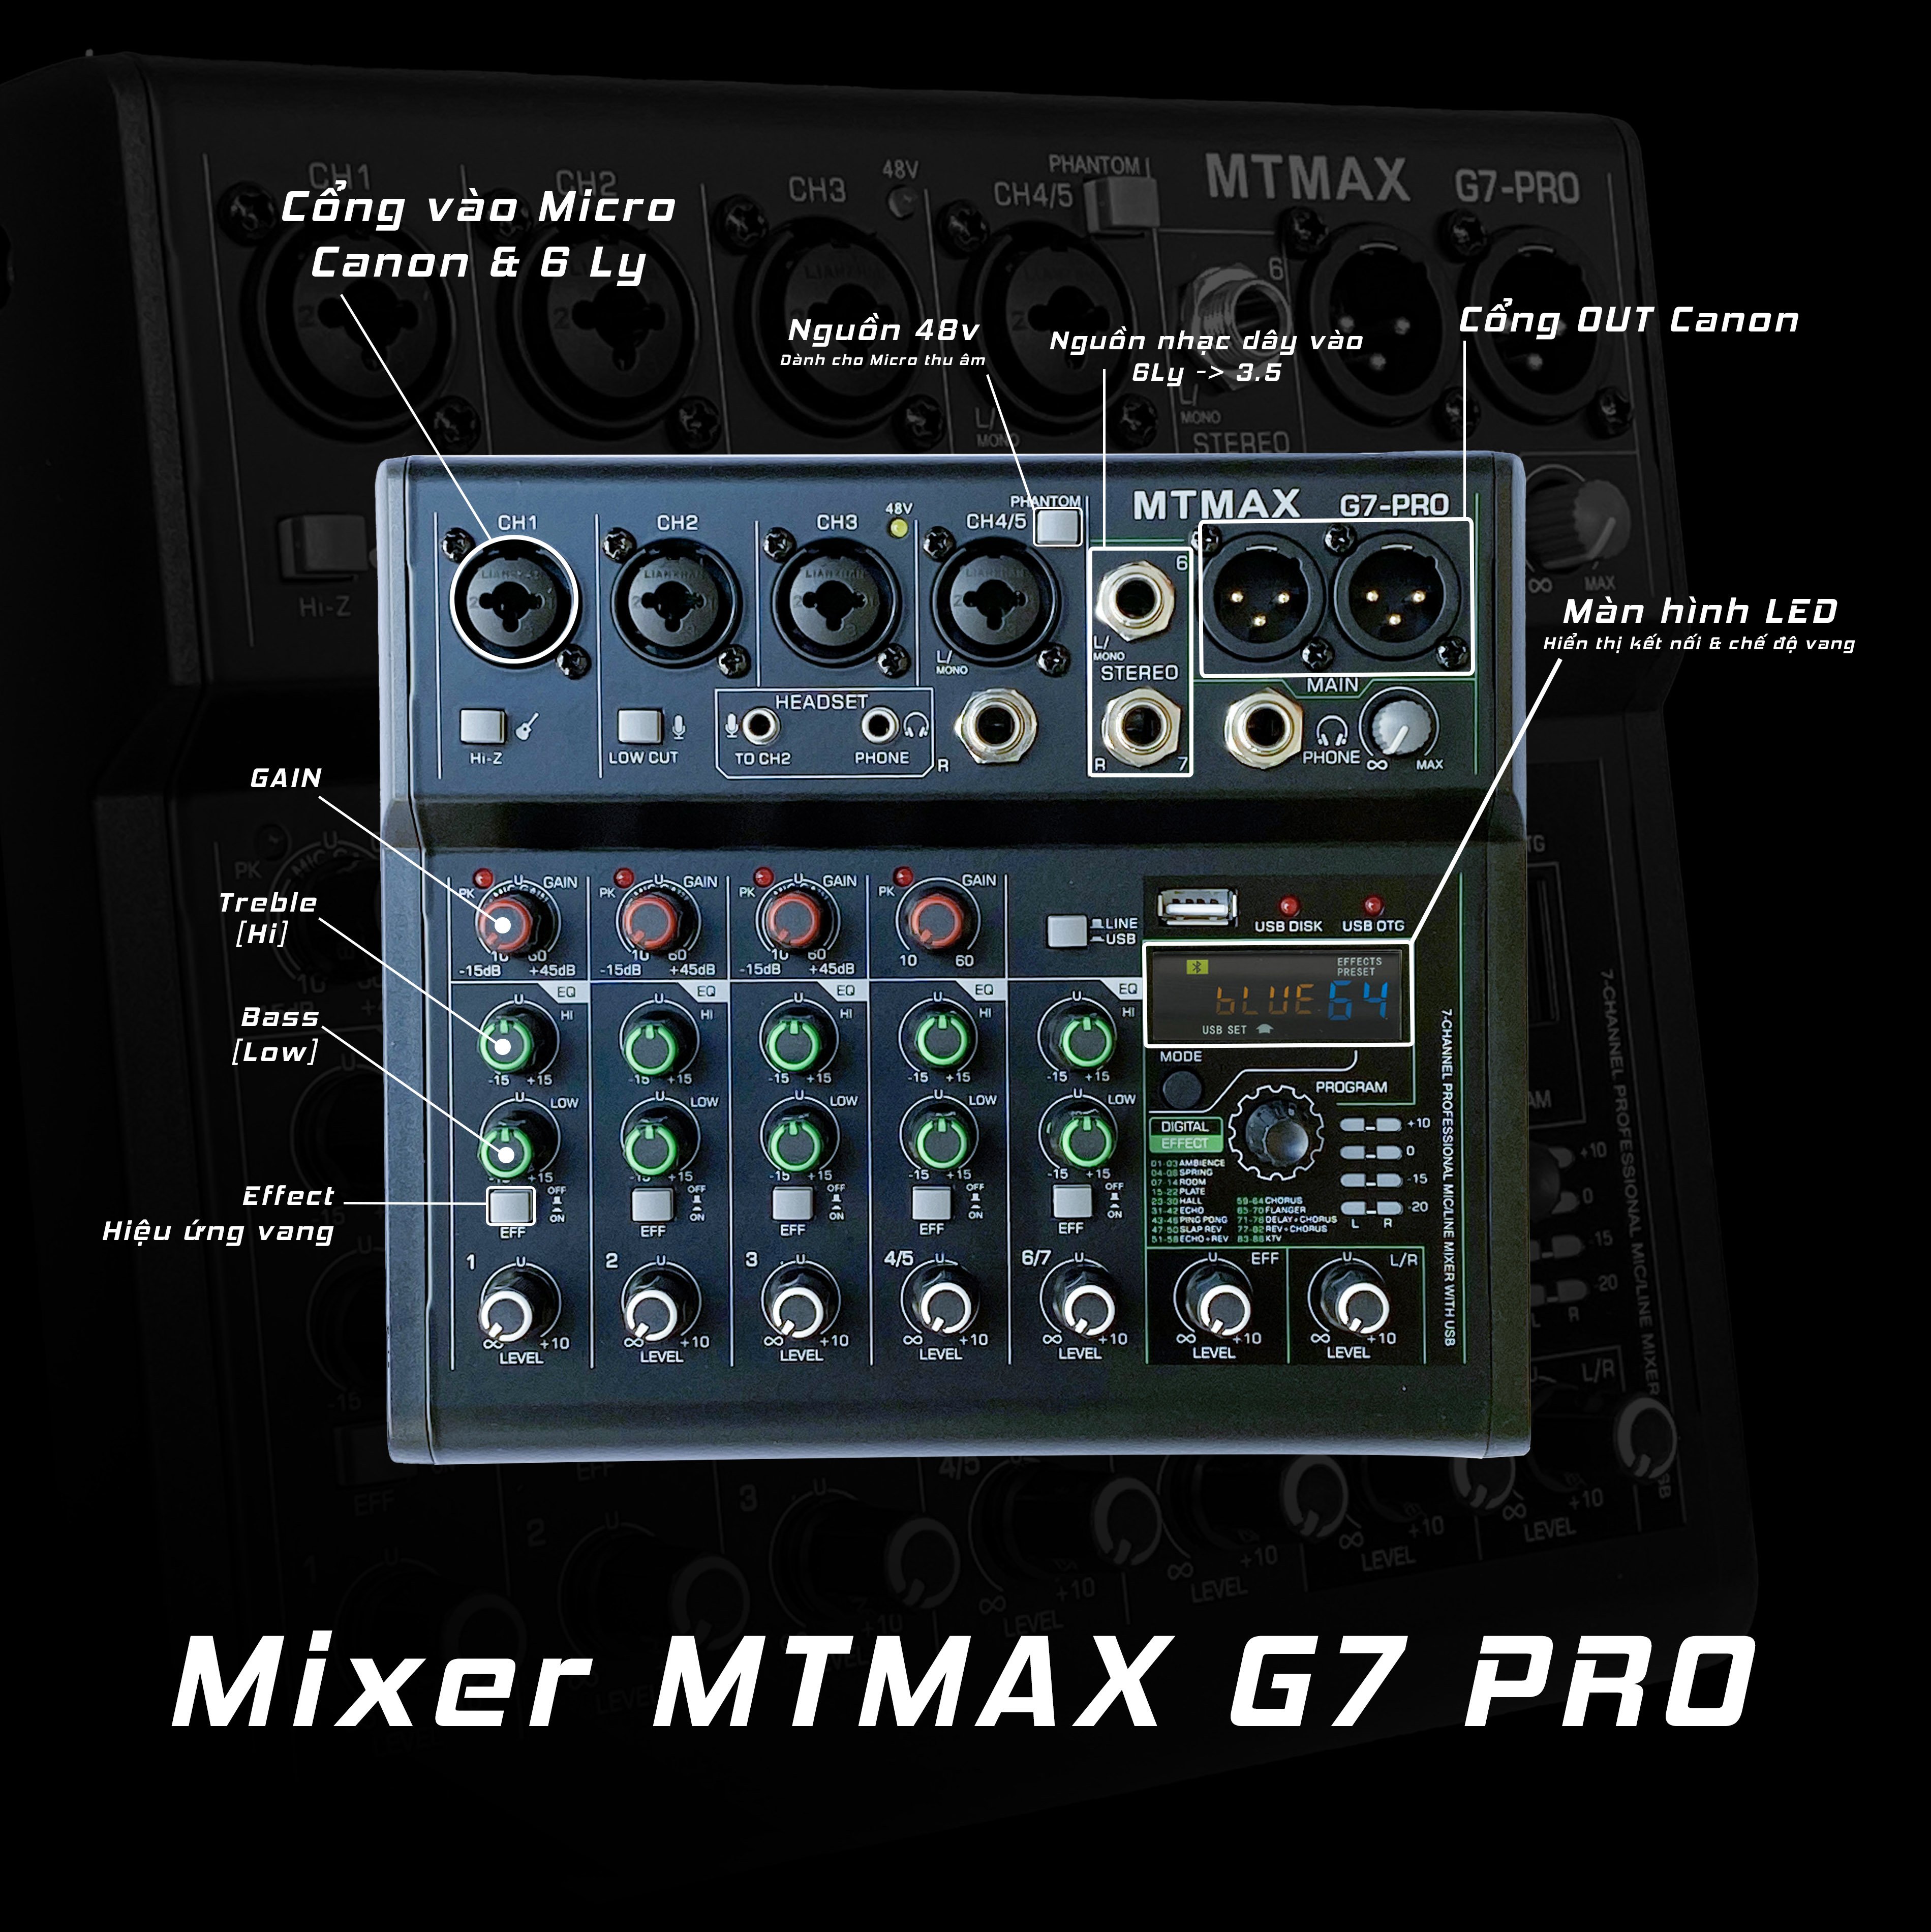 Mixer G7 MTMAX bluetooth -Karaoke Loa Kéo - Hát Thu âm - 88 Hiệu ứng vang số hỗ trợ điều chỉnh âm thanh  Amply gia đình và hát thu âm livestream bảo hành 12 tháng hàng chính hãng